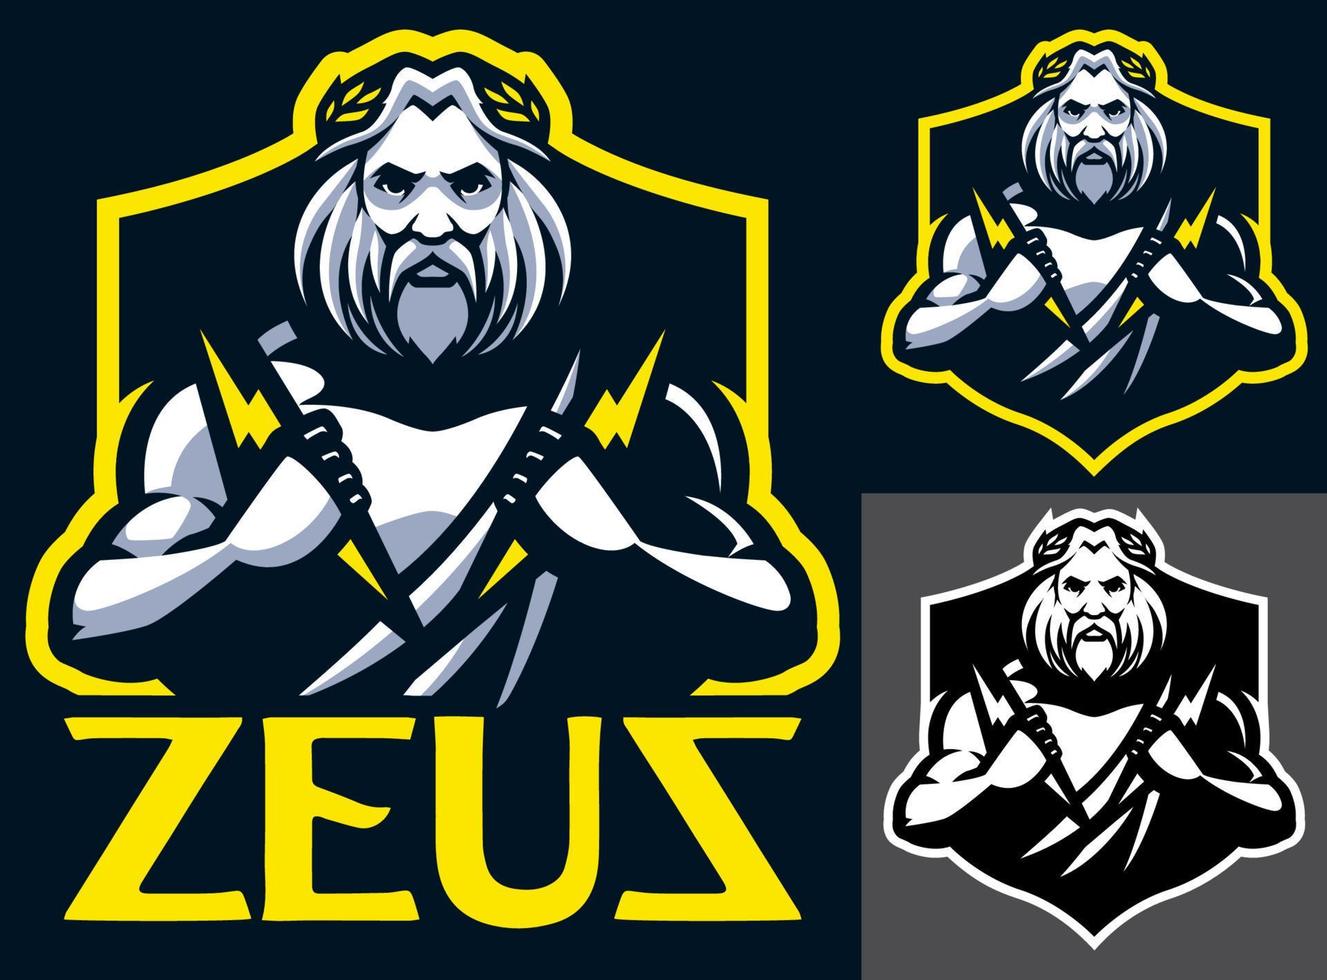 Zeus god mascotte vector